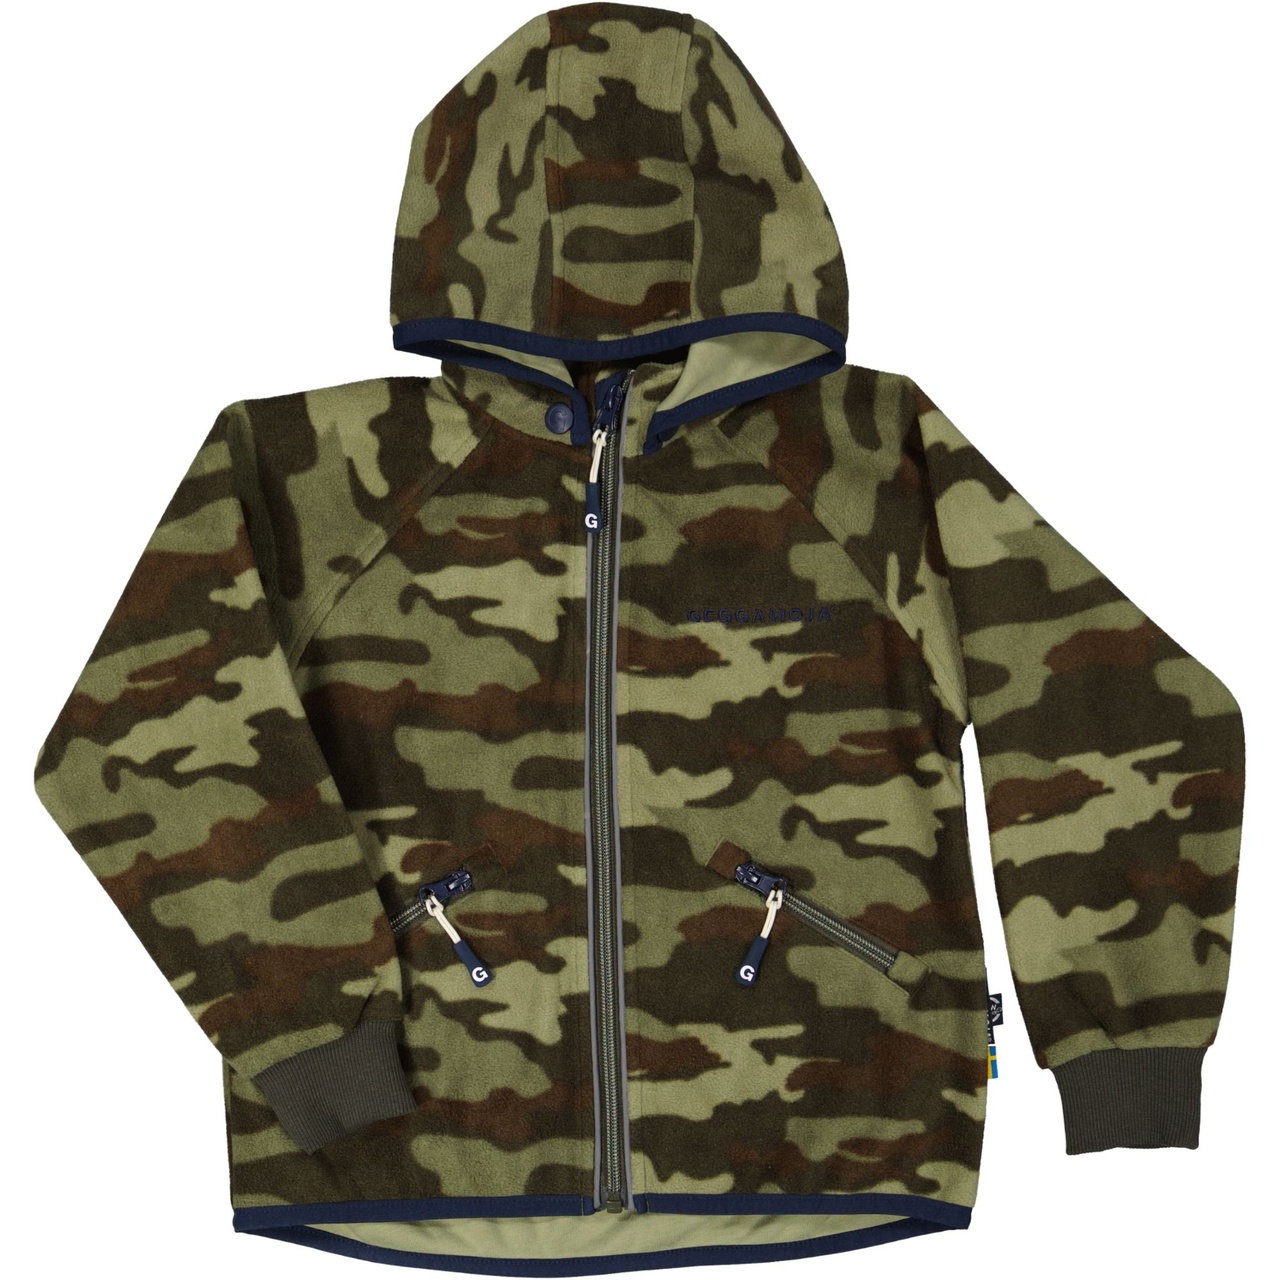 Wind fleece jacket Camouflage 146/152